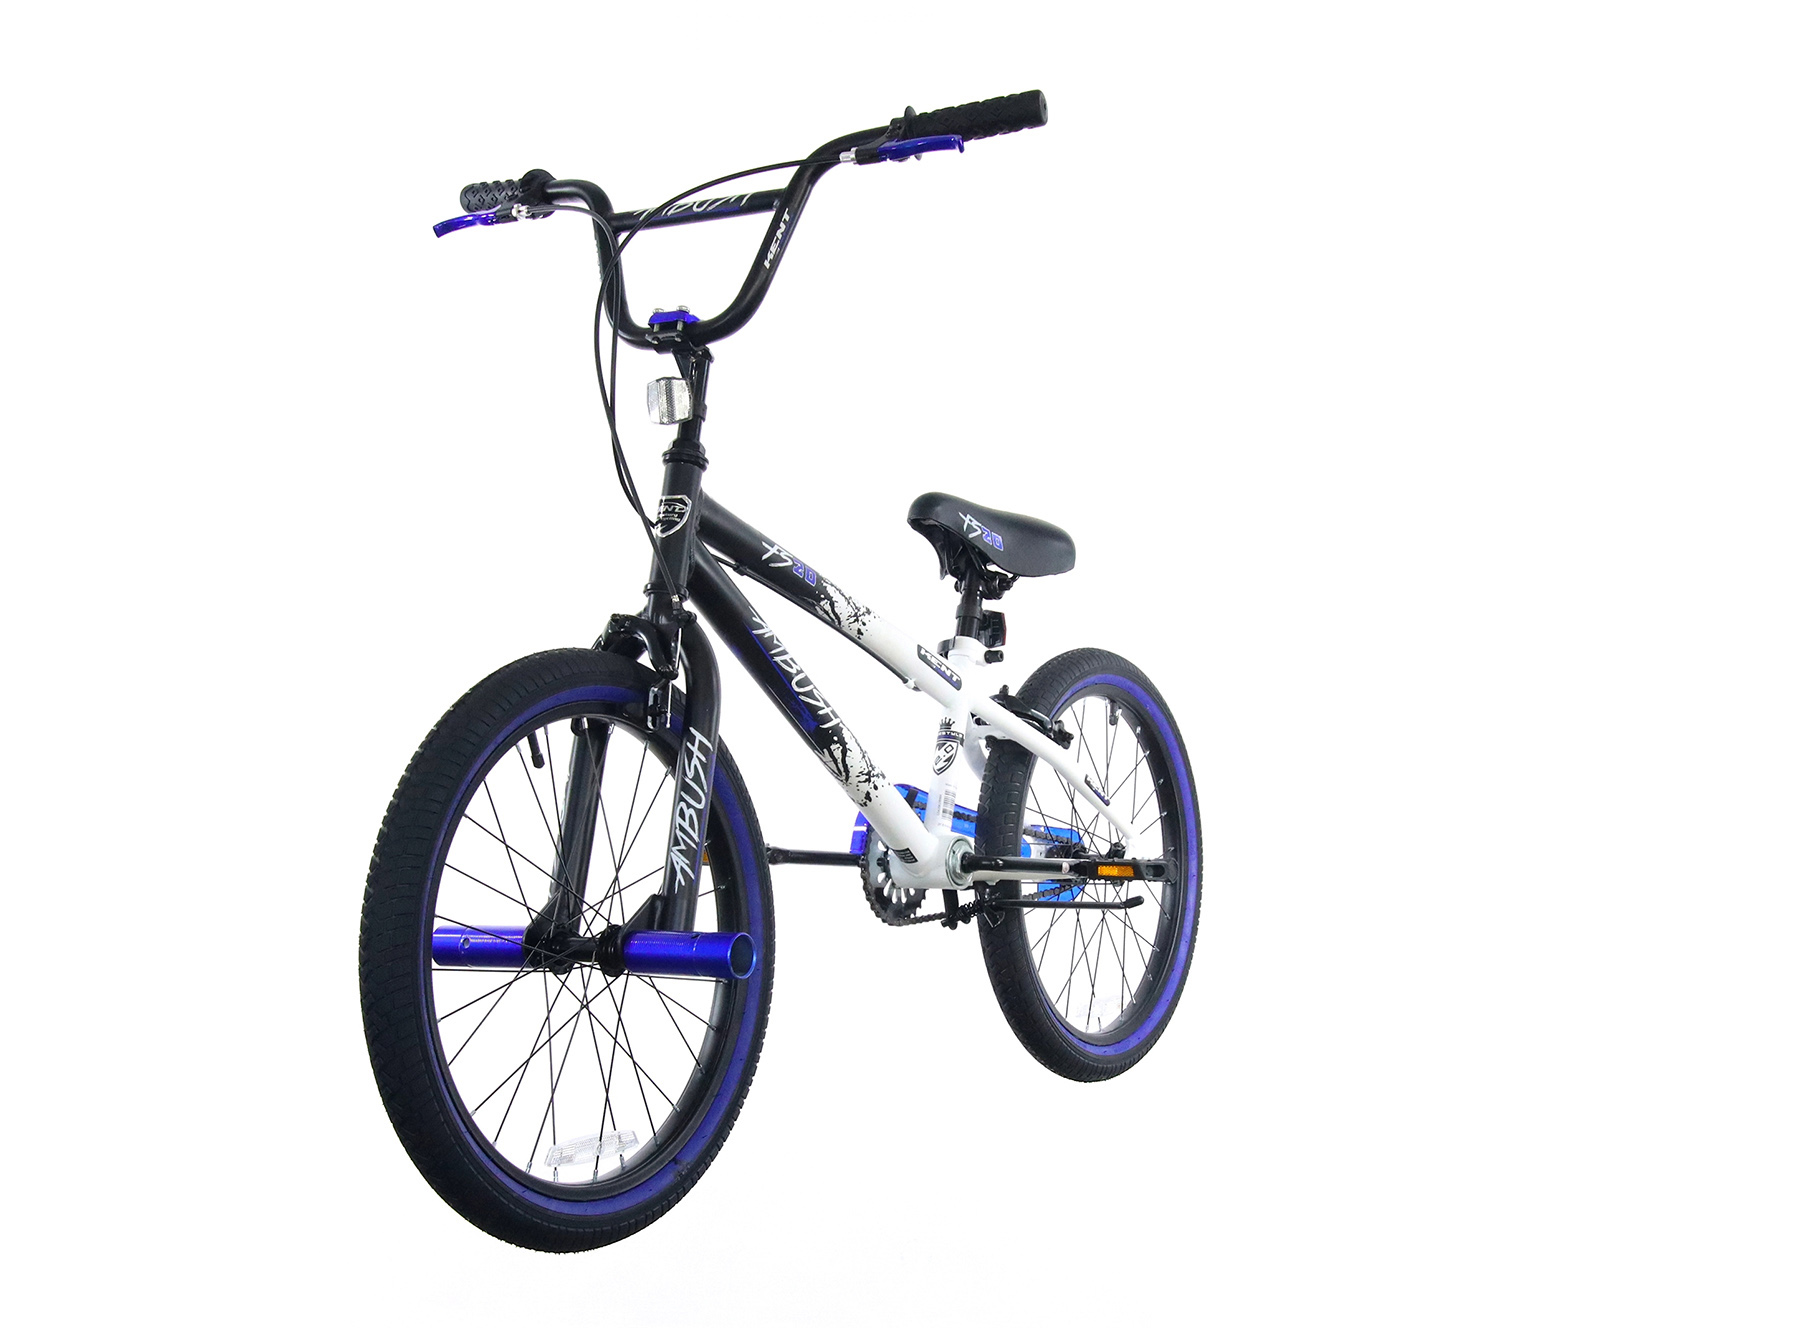 Funsea-bicicleta Bmx para niños y adultos, 20 pulgadas, Street Park, Stunt  Freestyle, nivel de entrada, CPSC1512, EN16054, Kush2 brillante